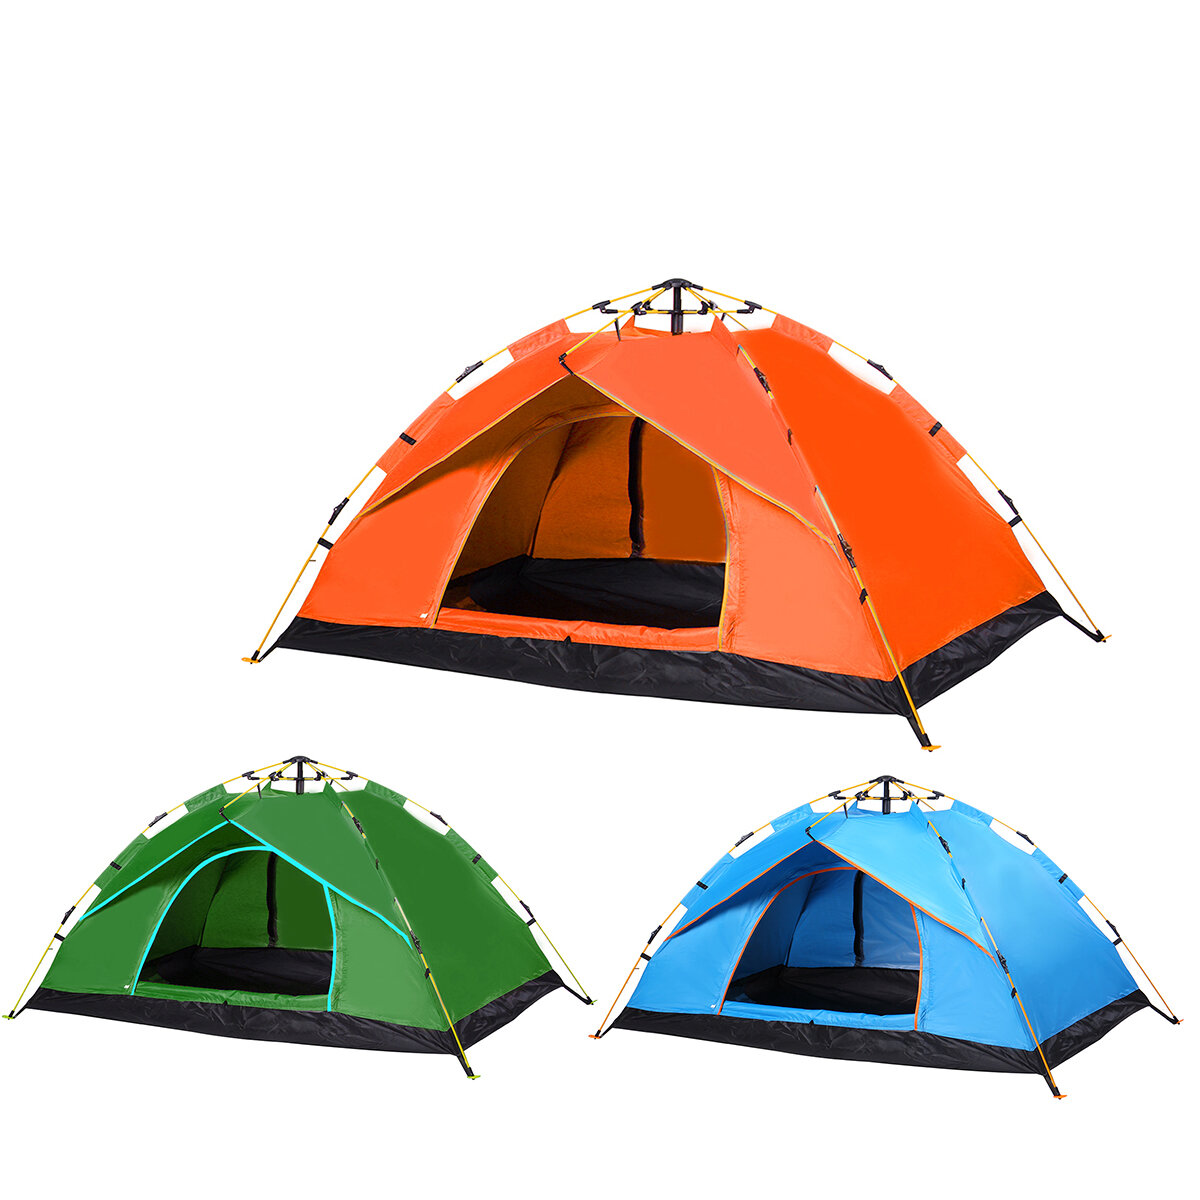 ançais: Tente de camping automatique à une couche pour une ou deux personnes, pliable, épaisse et imperméable pour les voyages et les randonnées en plein air.